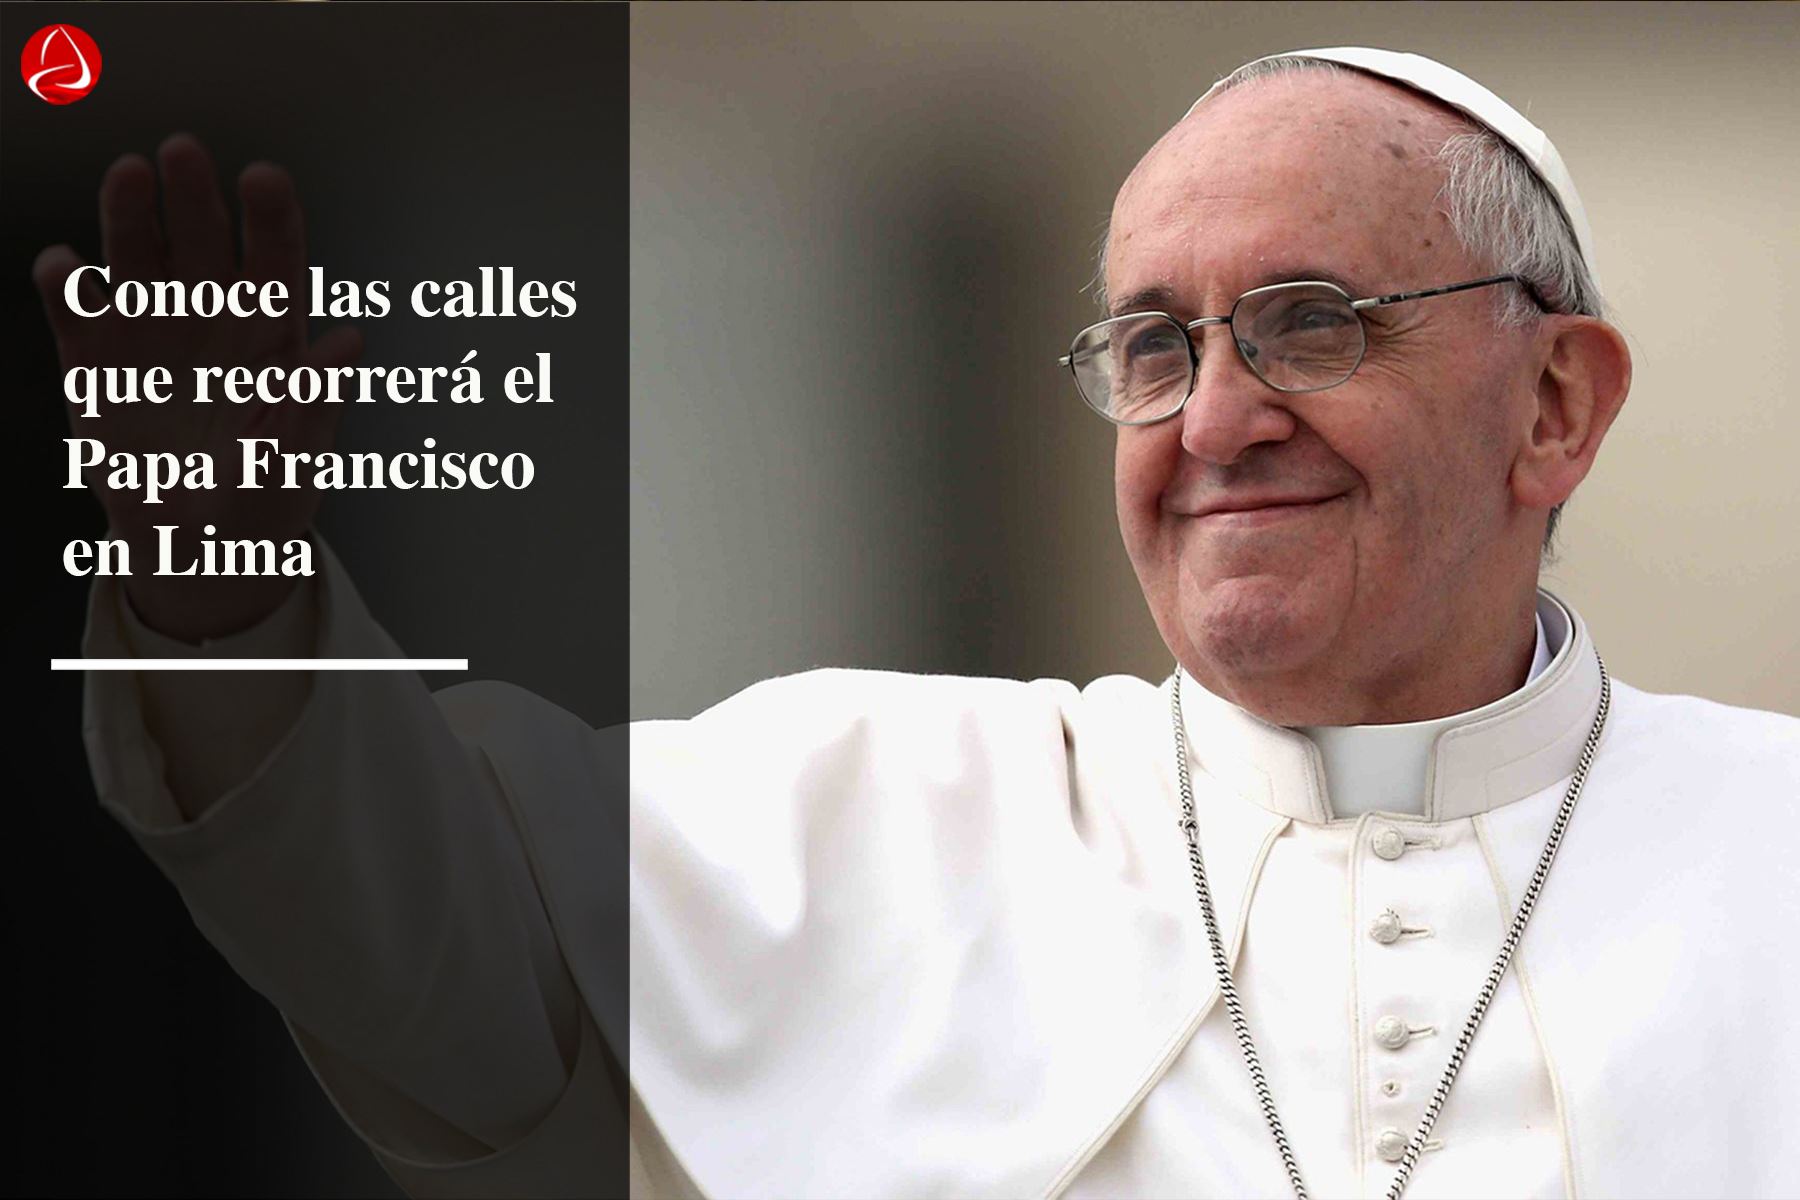 Recorrido del Papa Francisco en Lima